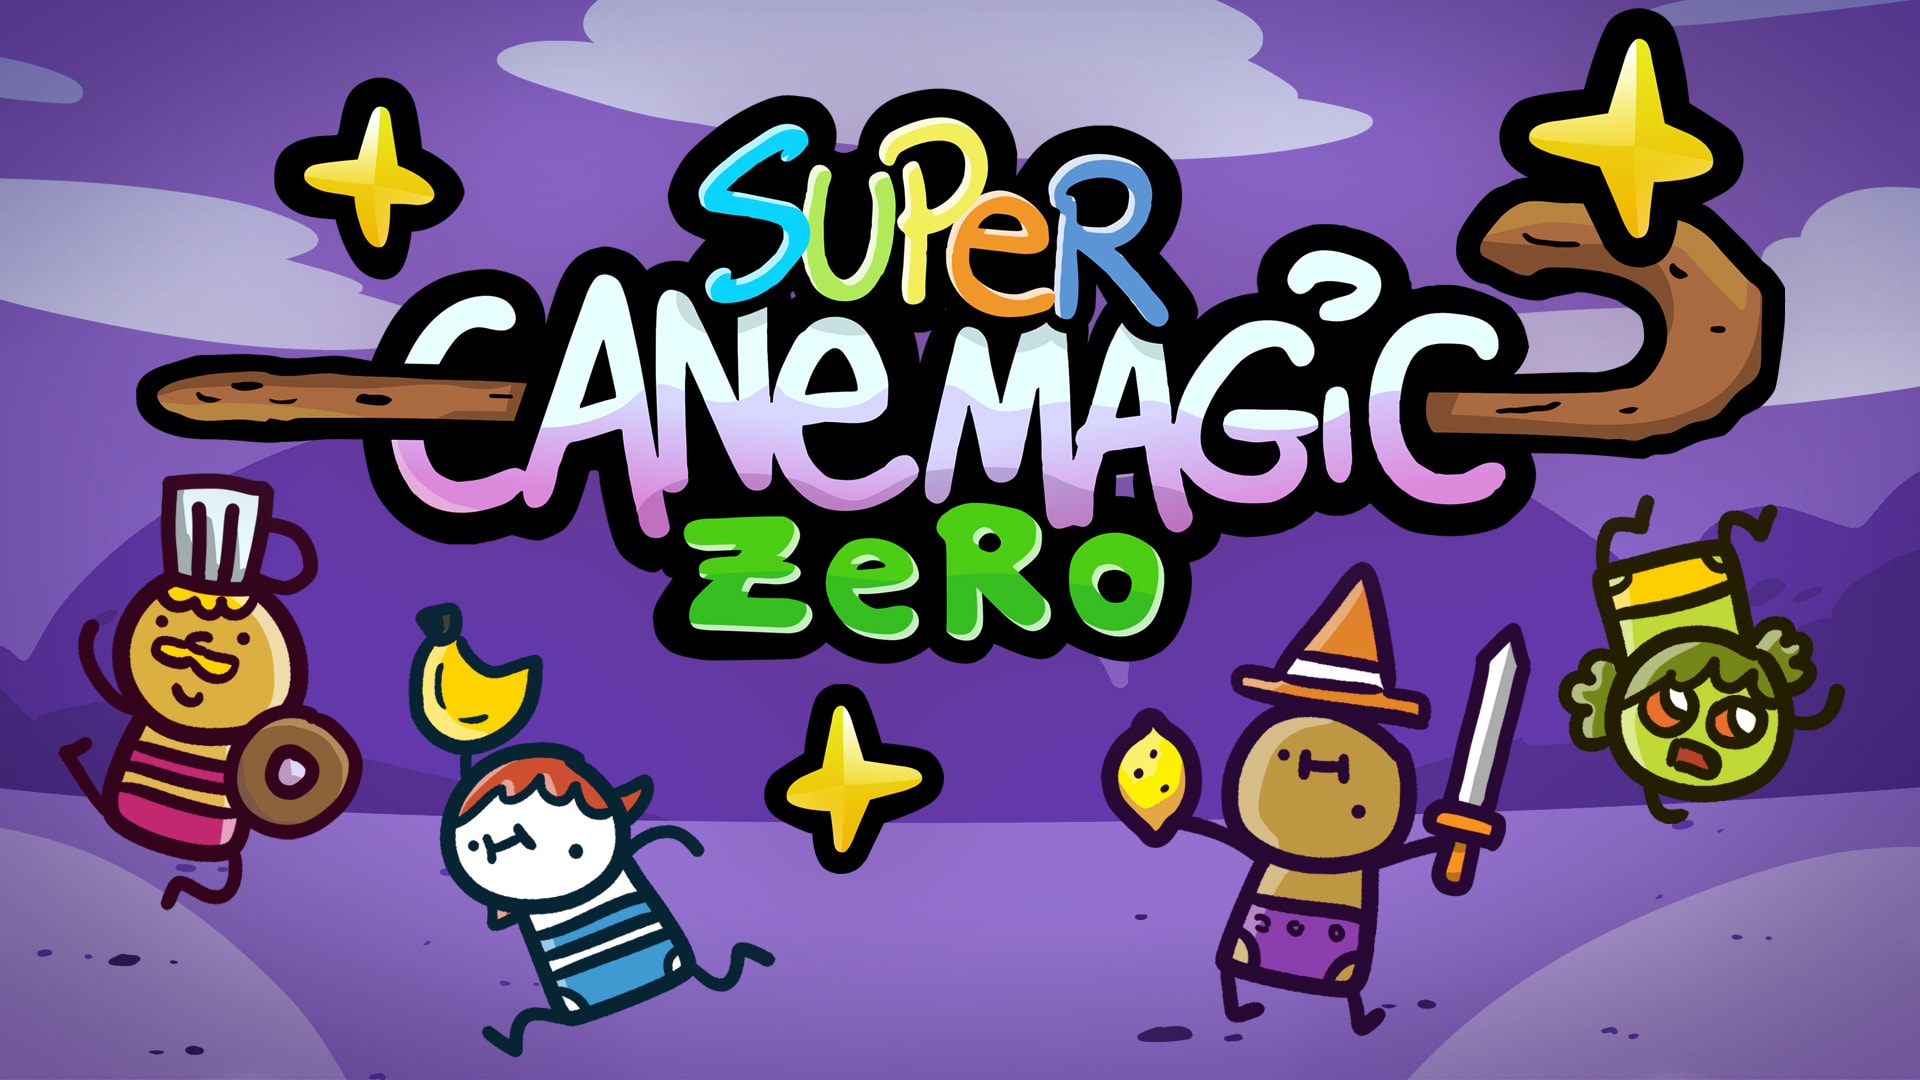 Super Cane Magic ZERO 1